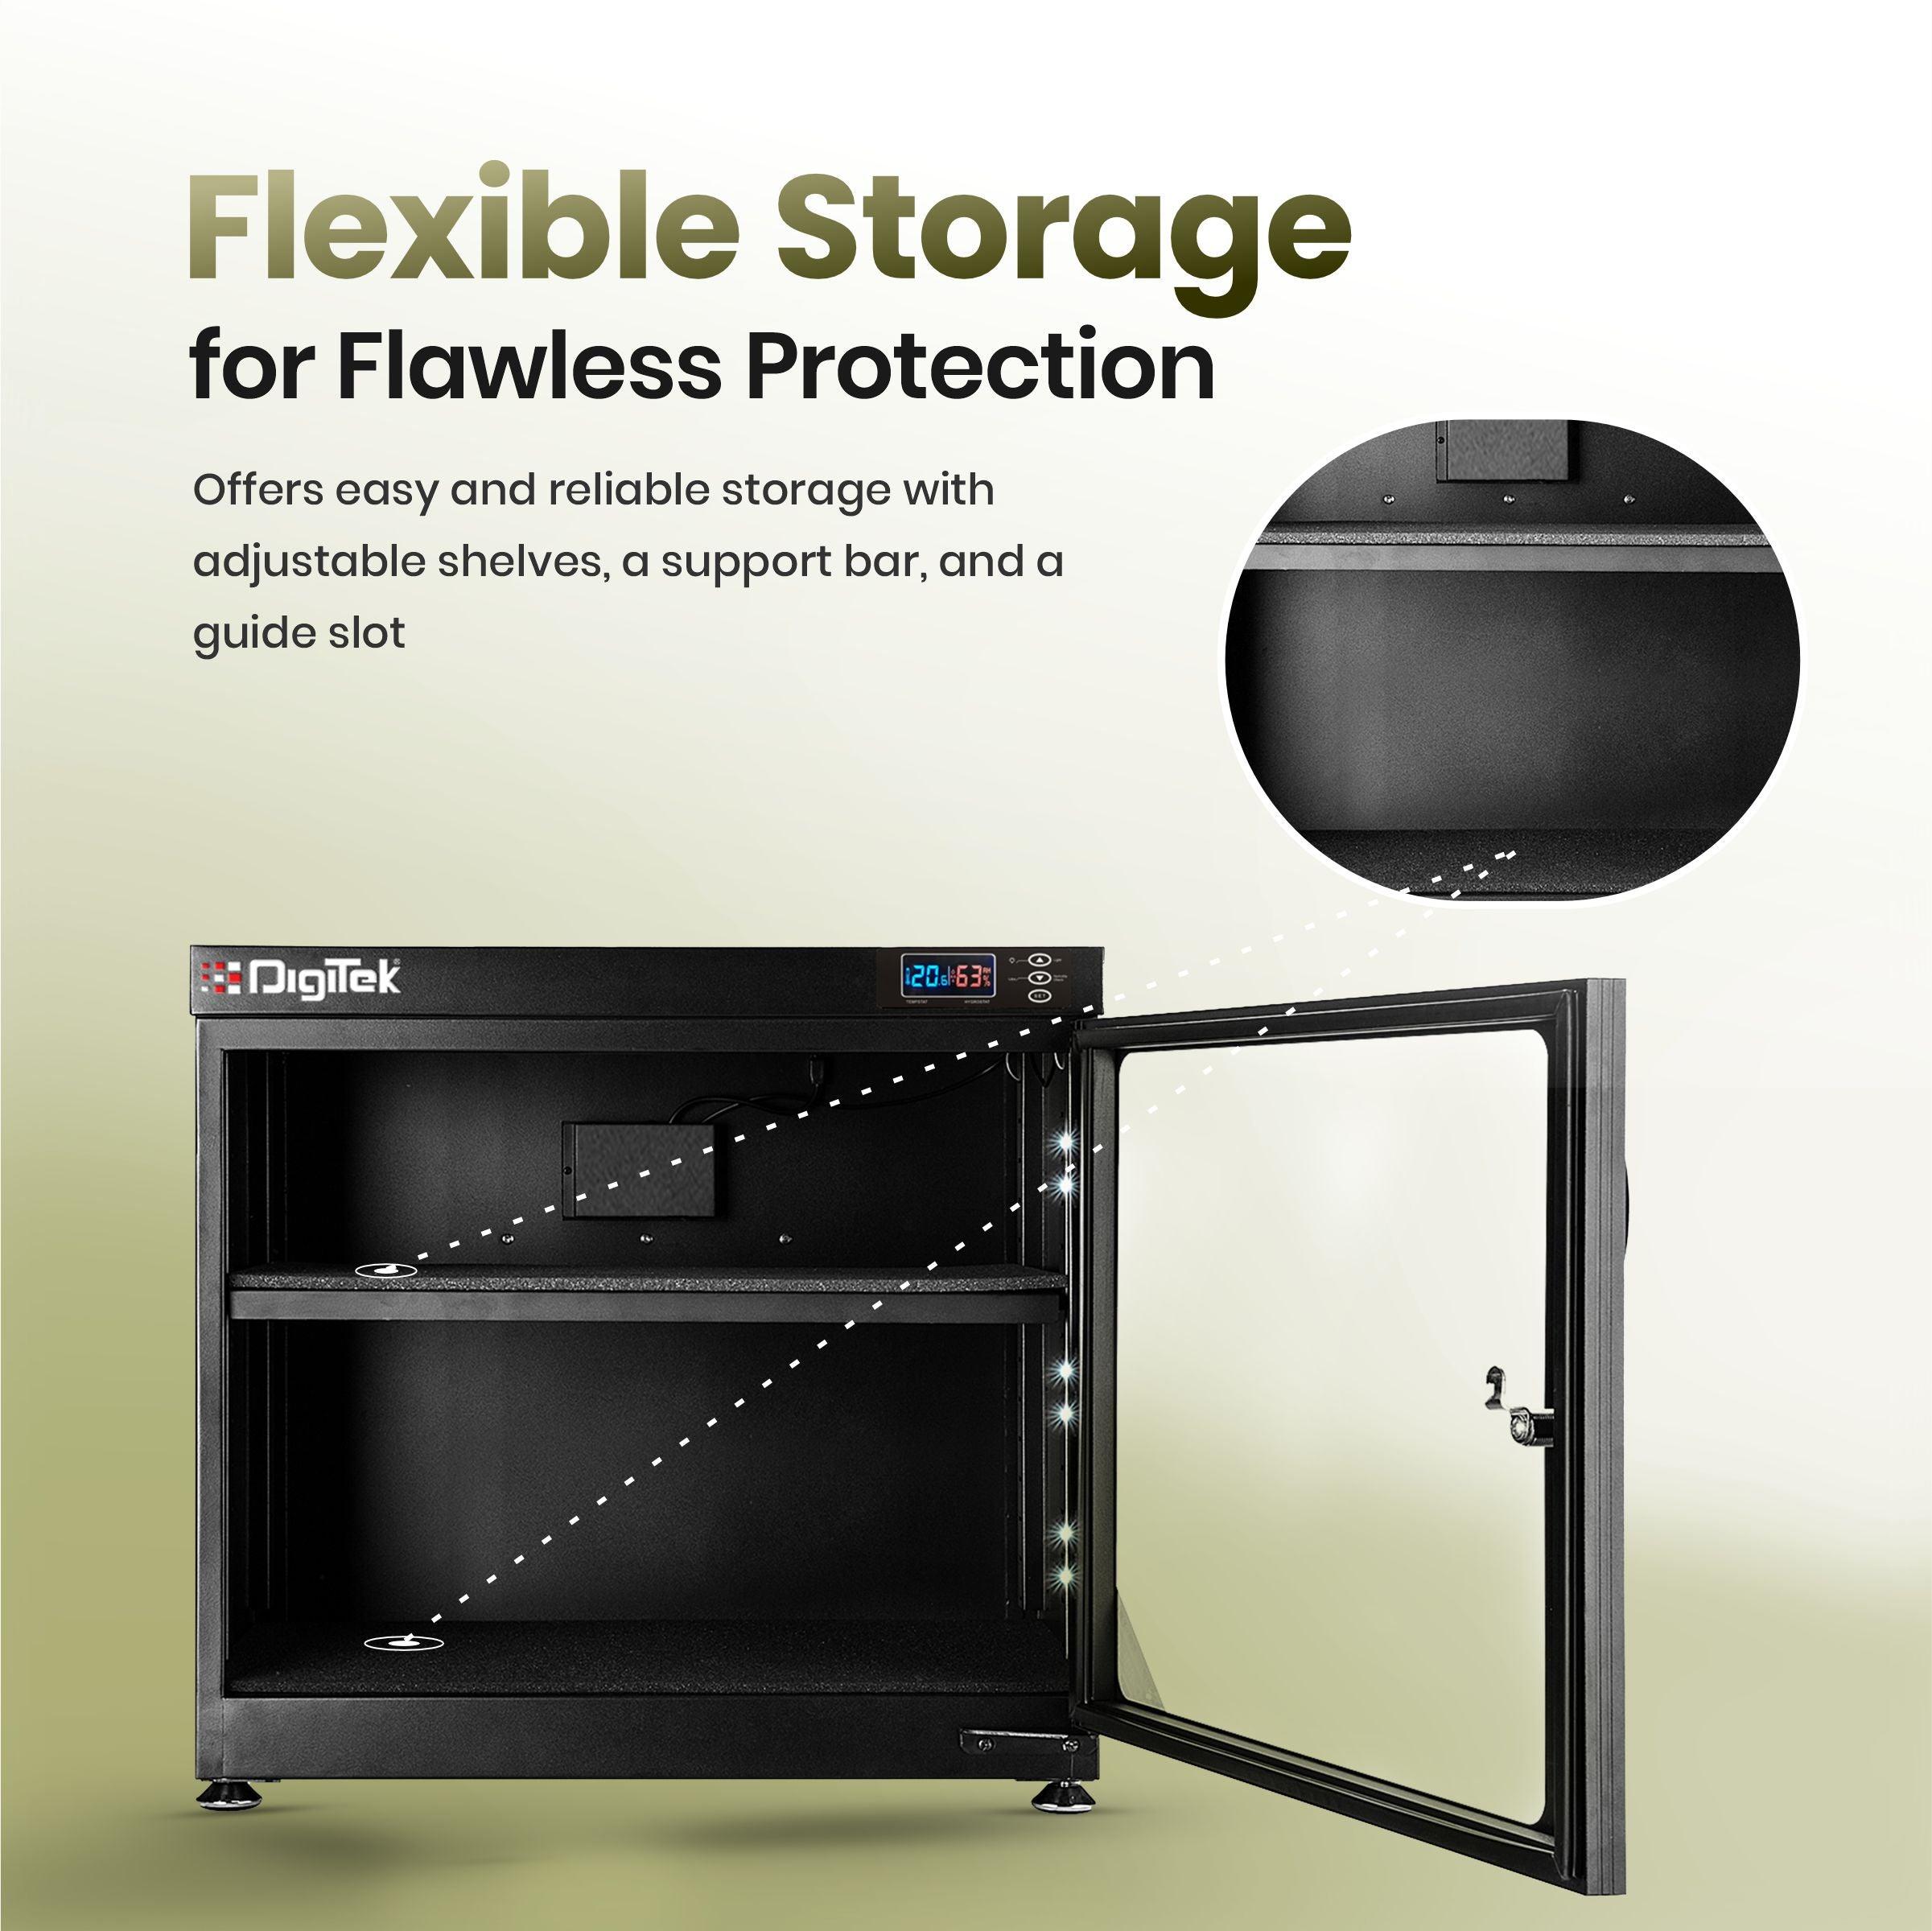 Digitek (AD-85HS) 85 Liters Capacity Digital Display Dry Cabinet with Humidity Controller (Black) - Digitek